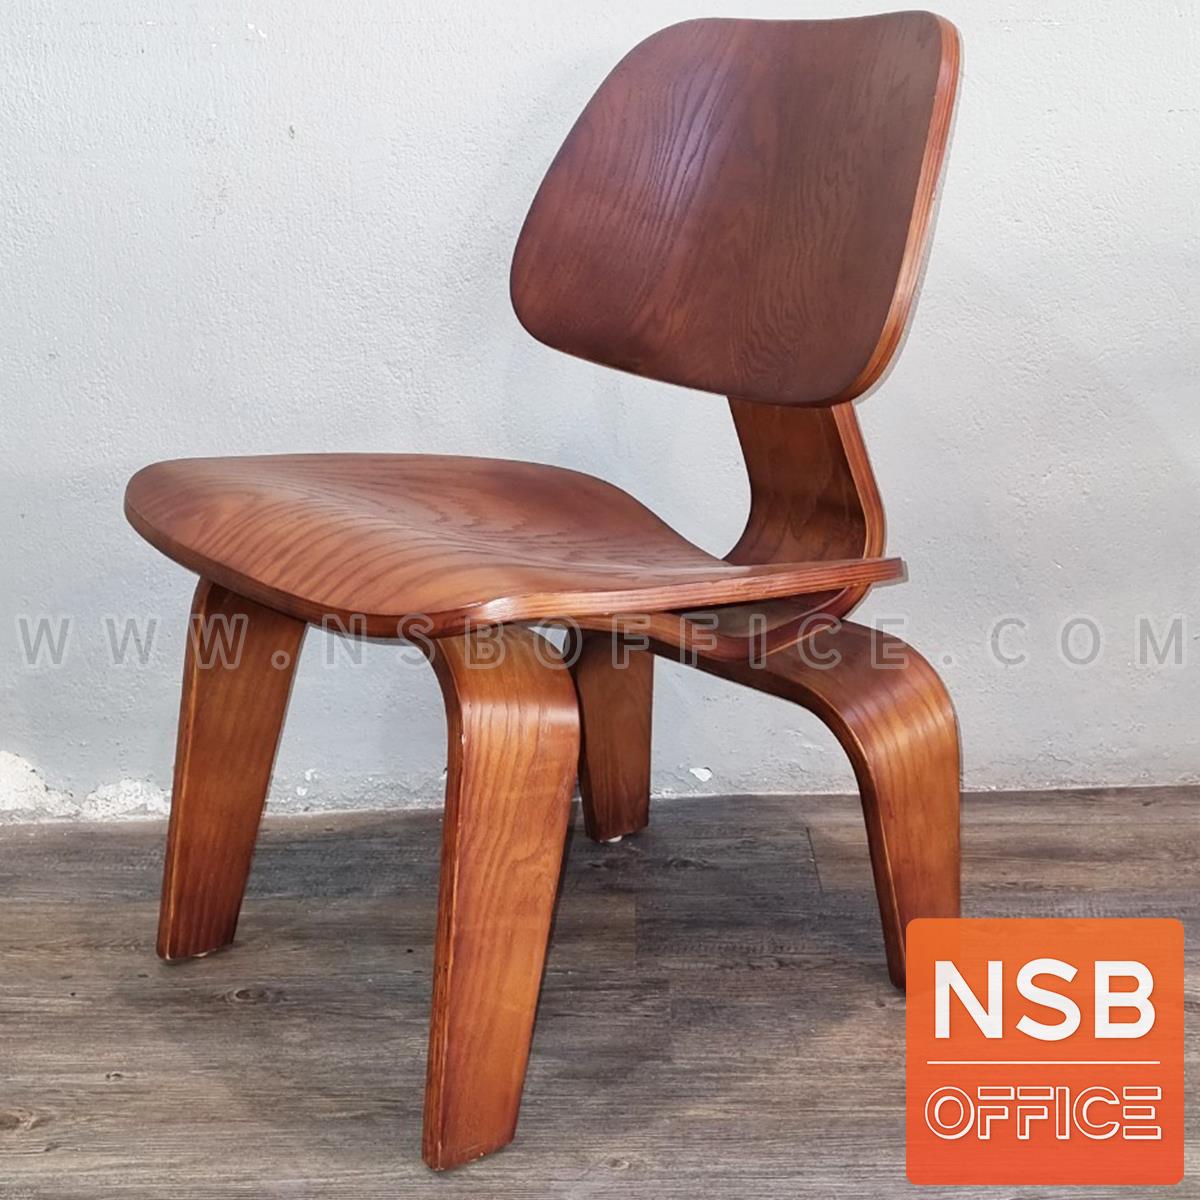 เก้าอี้โมเดิร์นไม้ รุ่น PN-92661 ขนาด 56W cm. โครงขาไม้